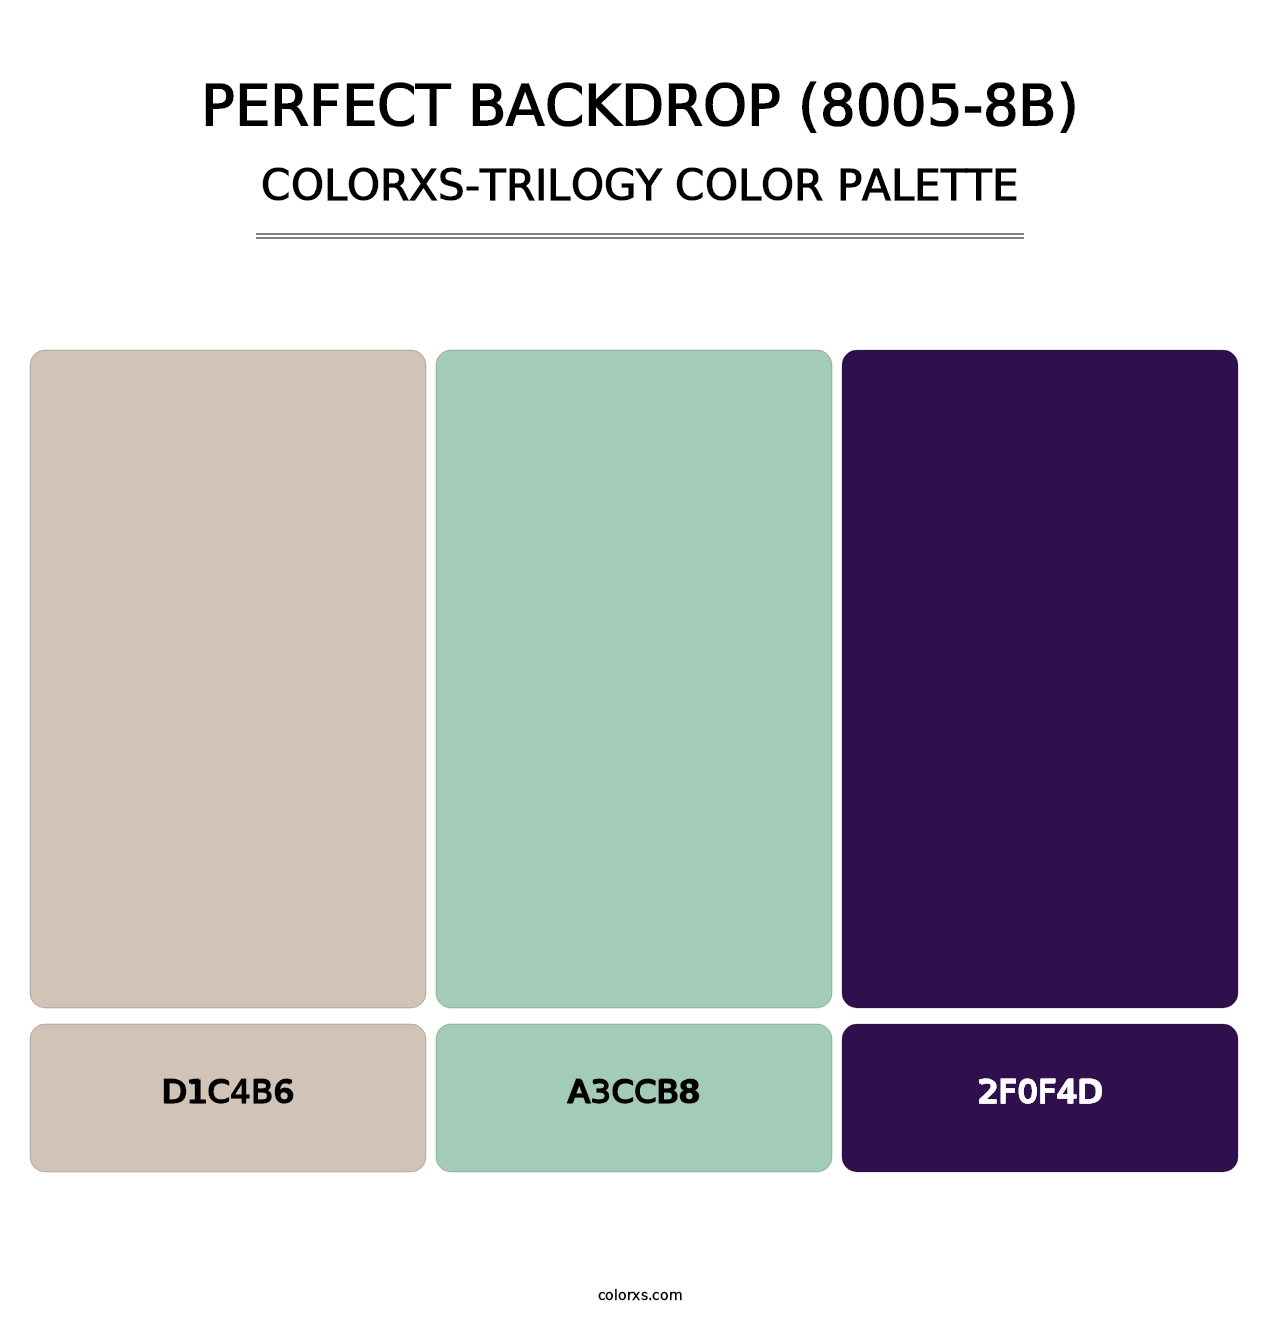 Perfect Backdrop (8005-8B) - Colorxs Trilogy Palette